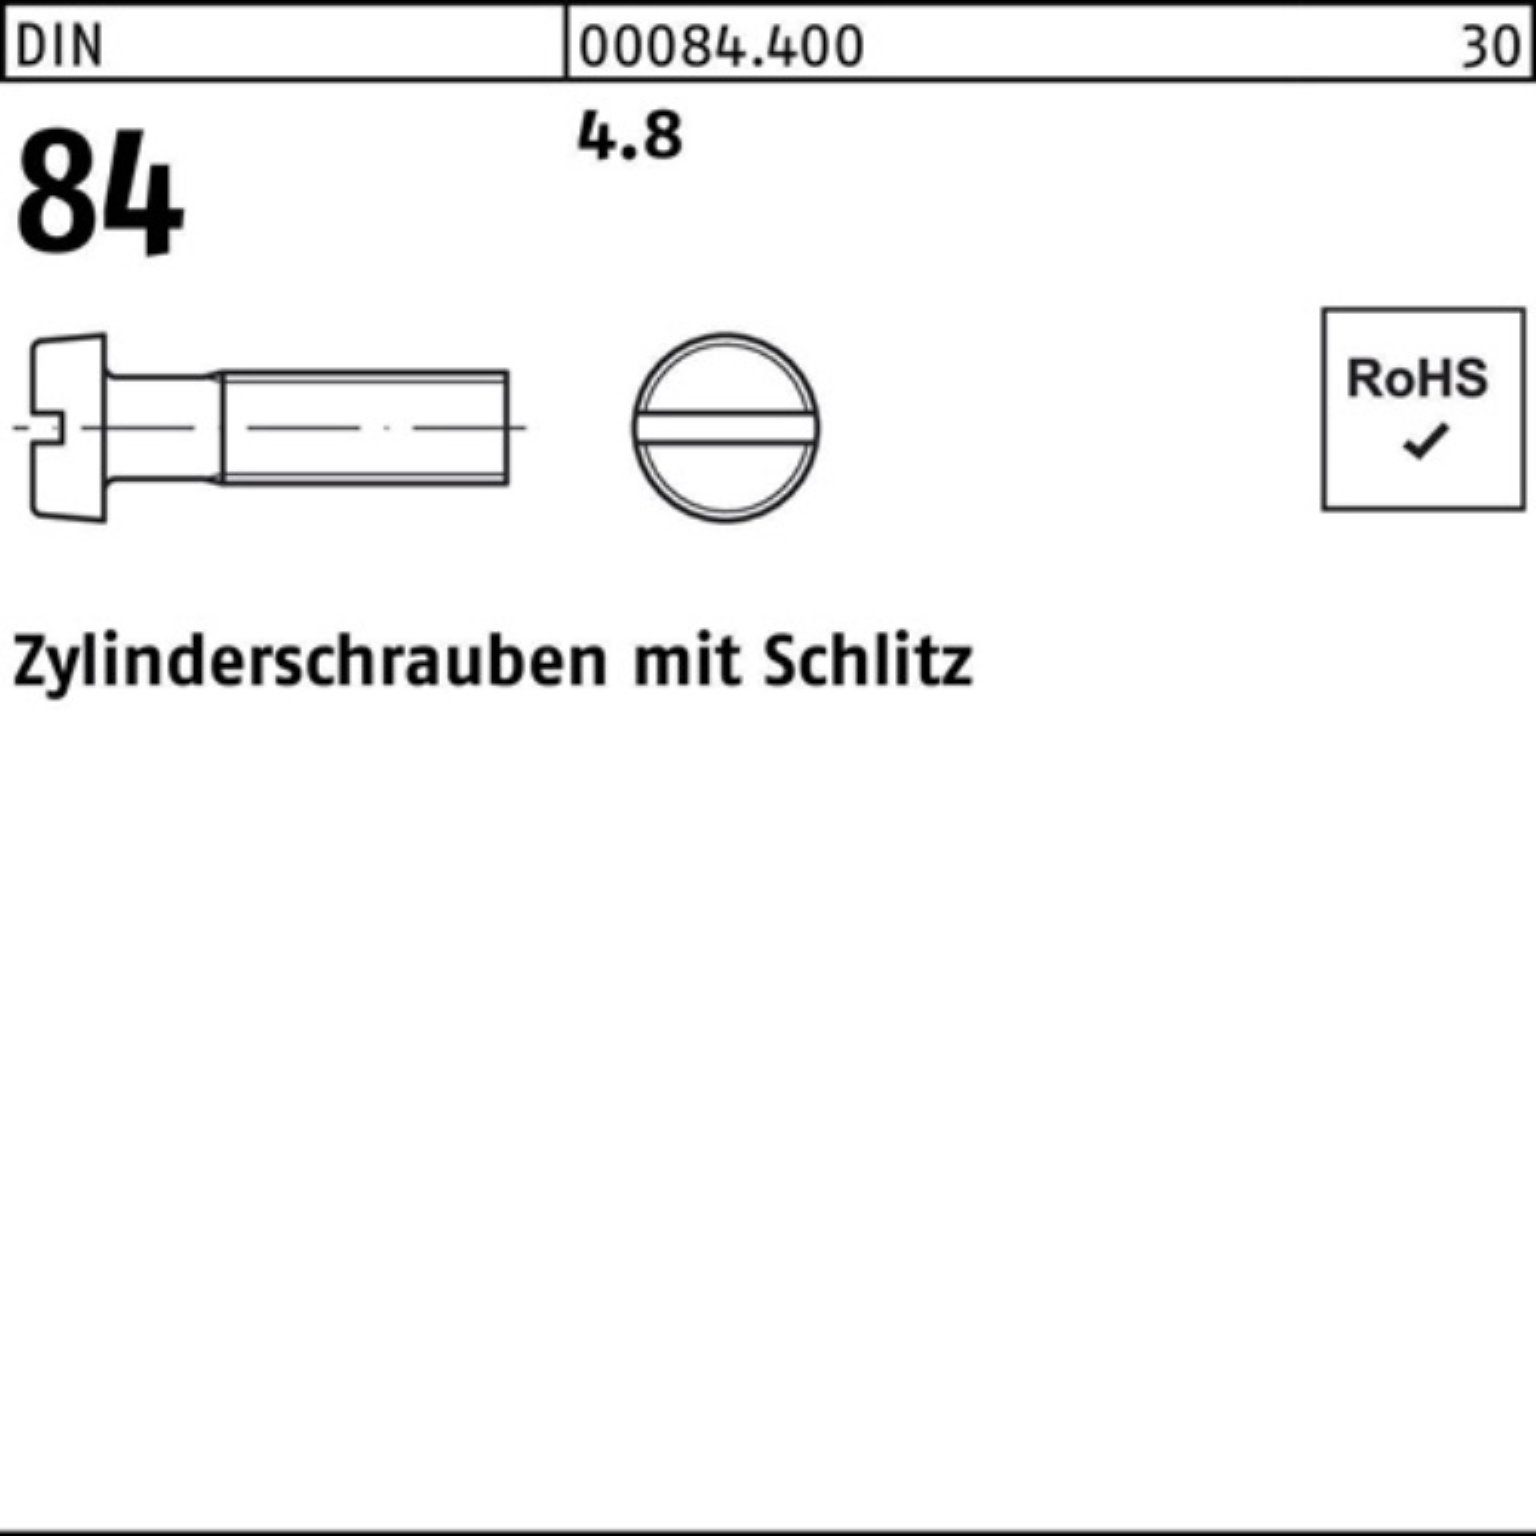 Pack 500er 16 DIN Schlitz M8x 84/ISO 500 St 1207 Zylinderschraube Reyher 4.8 Zylinderschraube